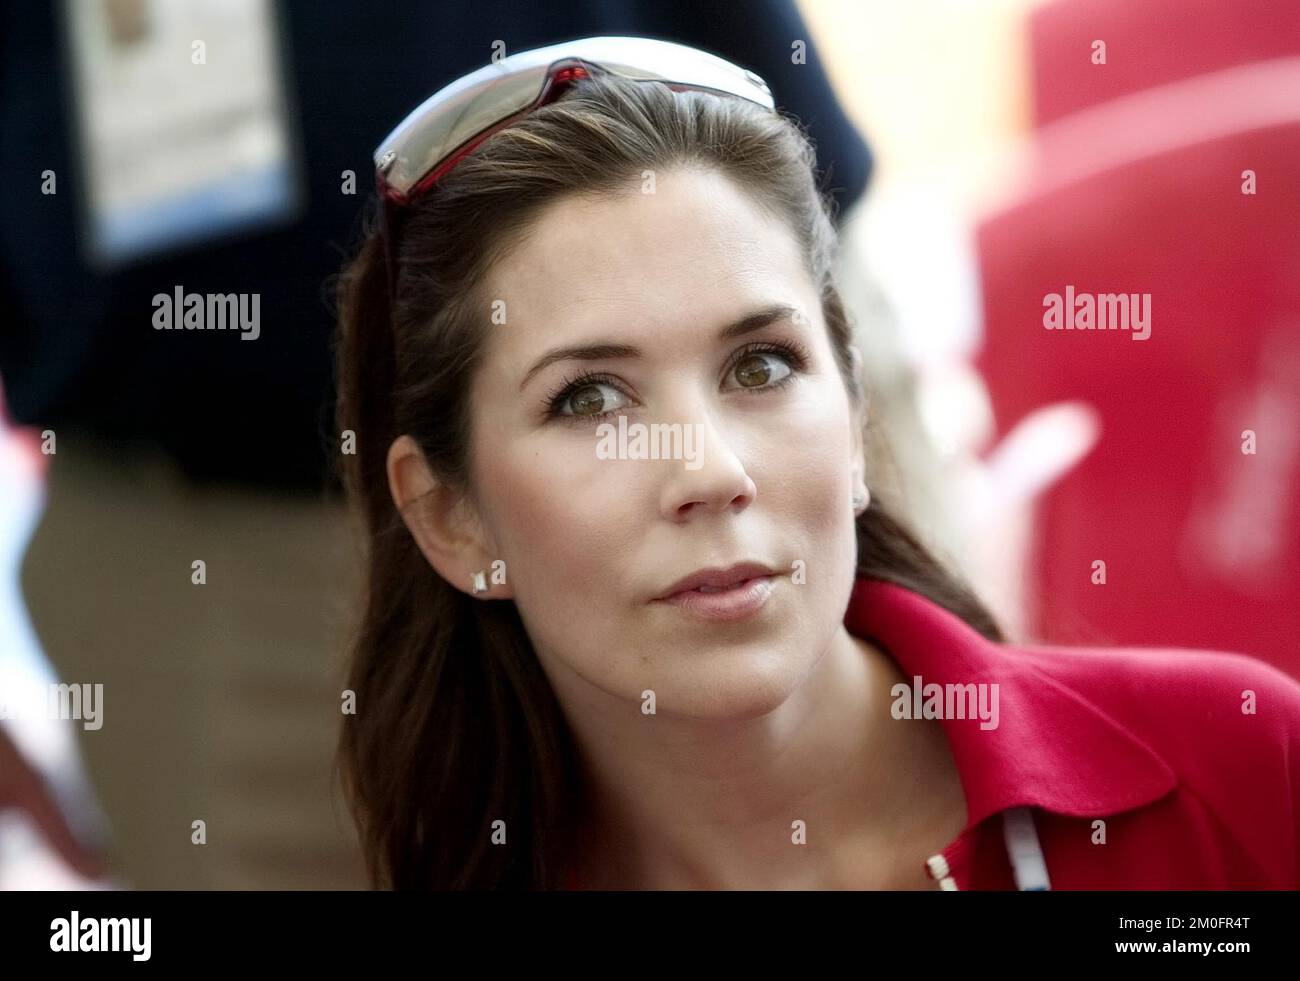 La principessa della Corona danese visita il campo degli atleti danesi nella città olimpica dove si tiene una conferenza stampa. Foto Stock